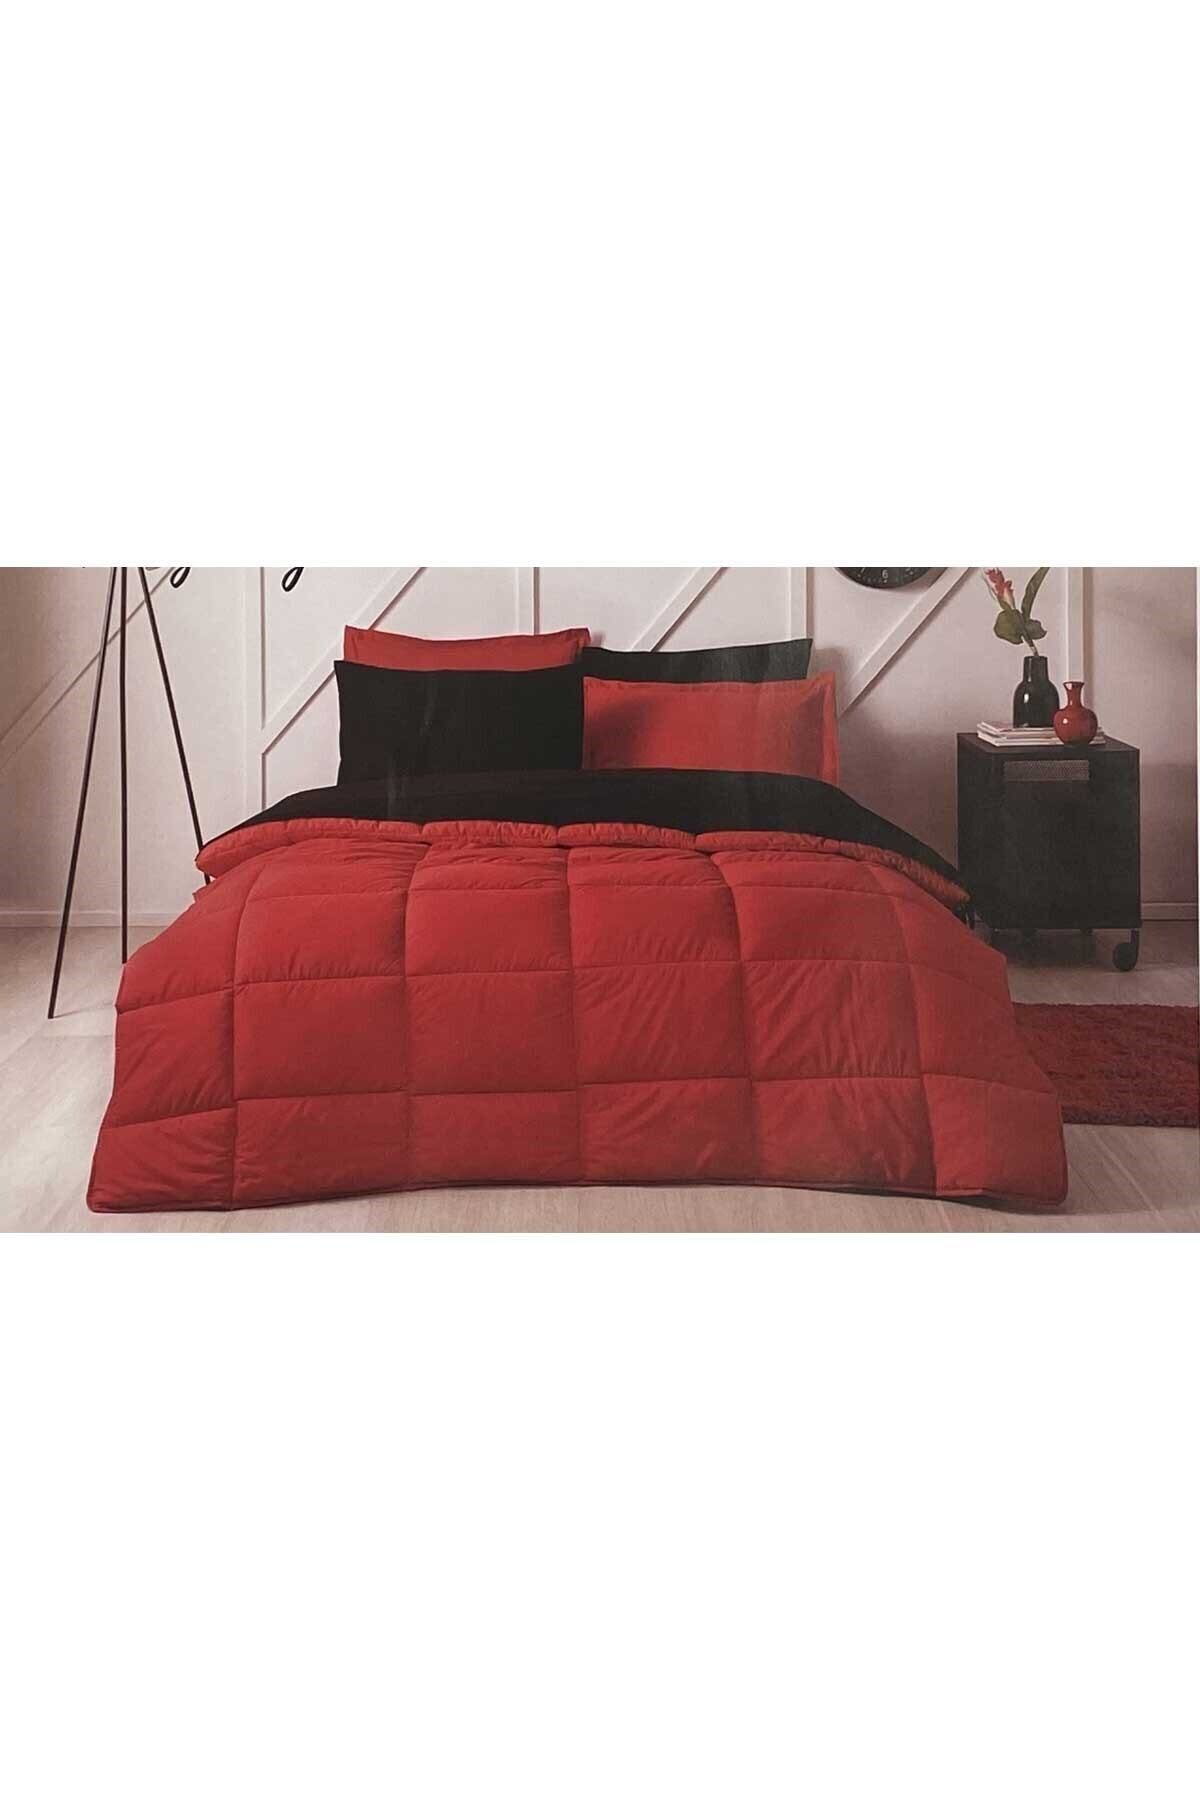 Özdilek Colormix Çift Kişilik Uyku Seti Kırmızı-siyah